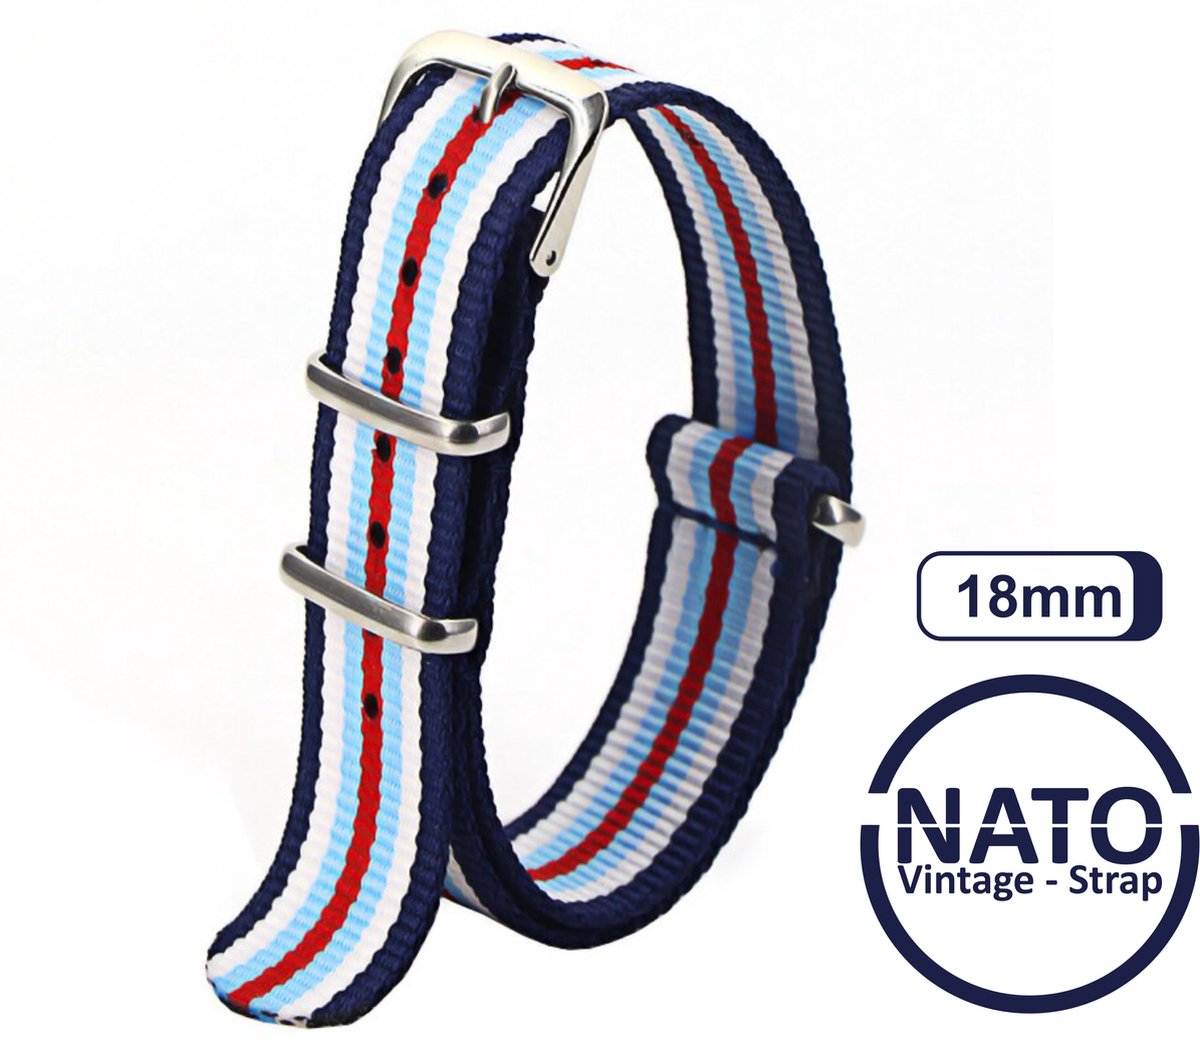 18mm Nato Strap Rood Wit Blauw streep - Vintage James Bond - Nato Strap collectie - Mannen - Horlogebanden - Martini kleurstelling - 18 mm bandbreedte voor oa. Seiko Rolex Omega Casio en Citizen